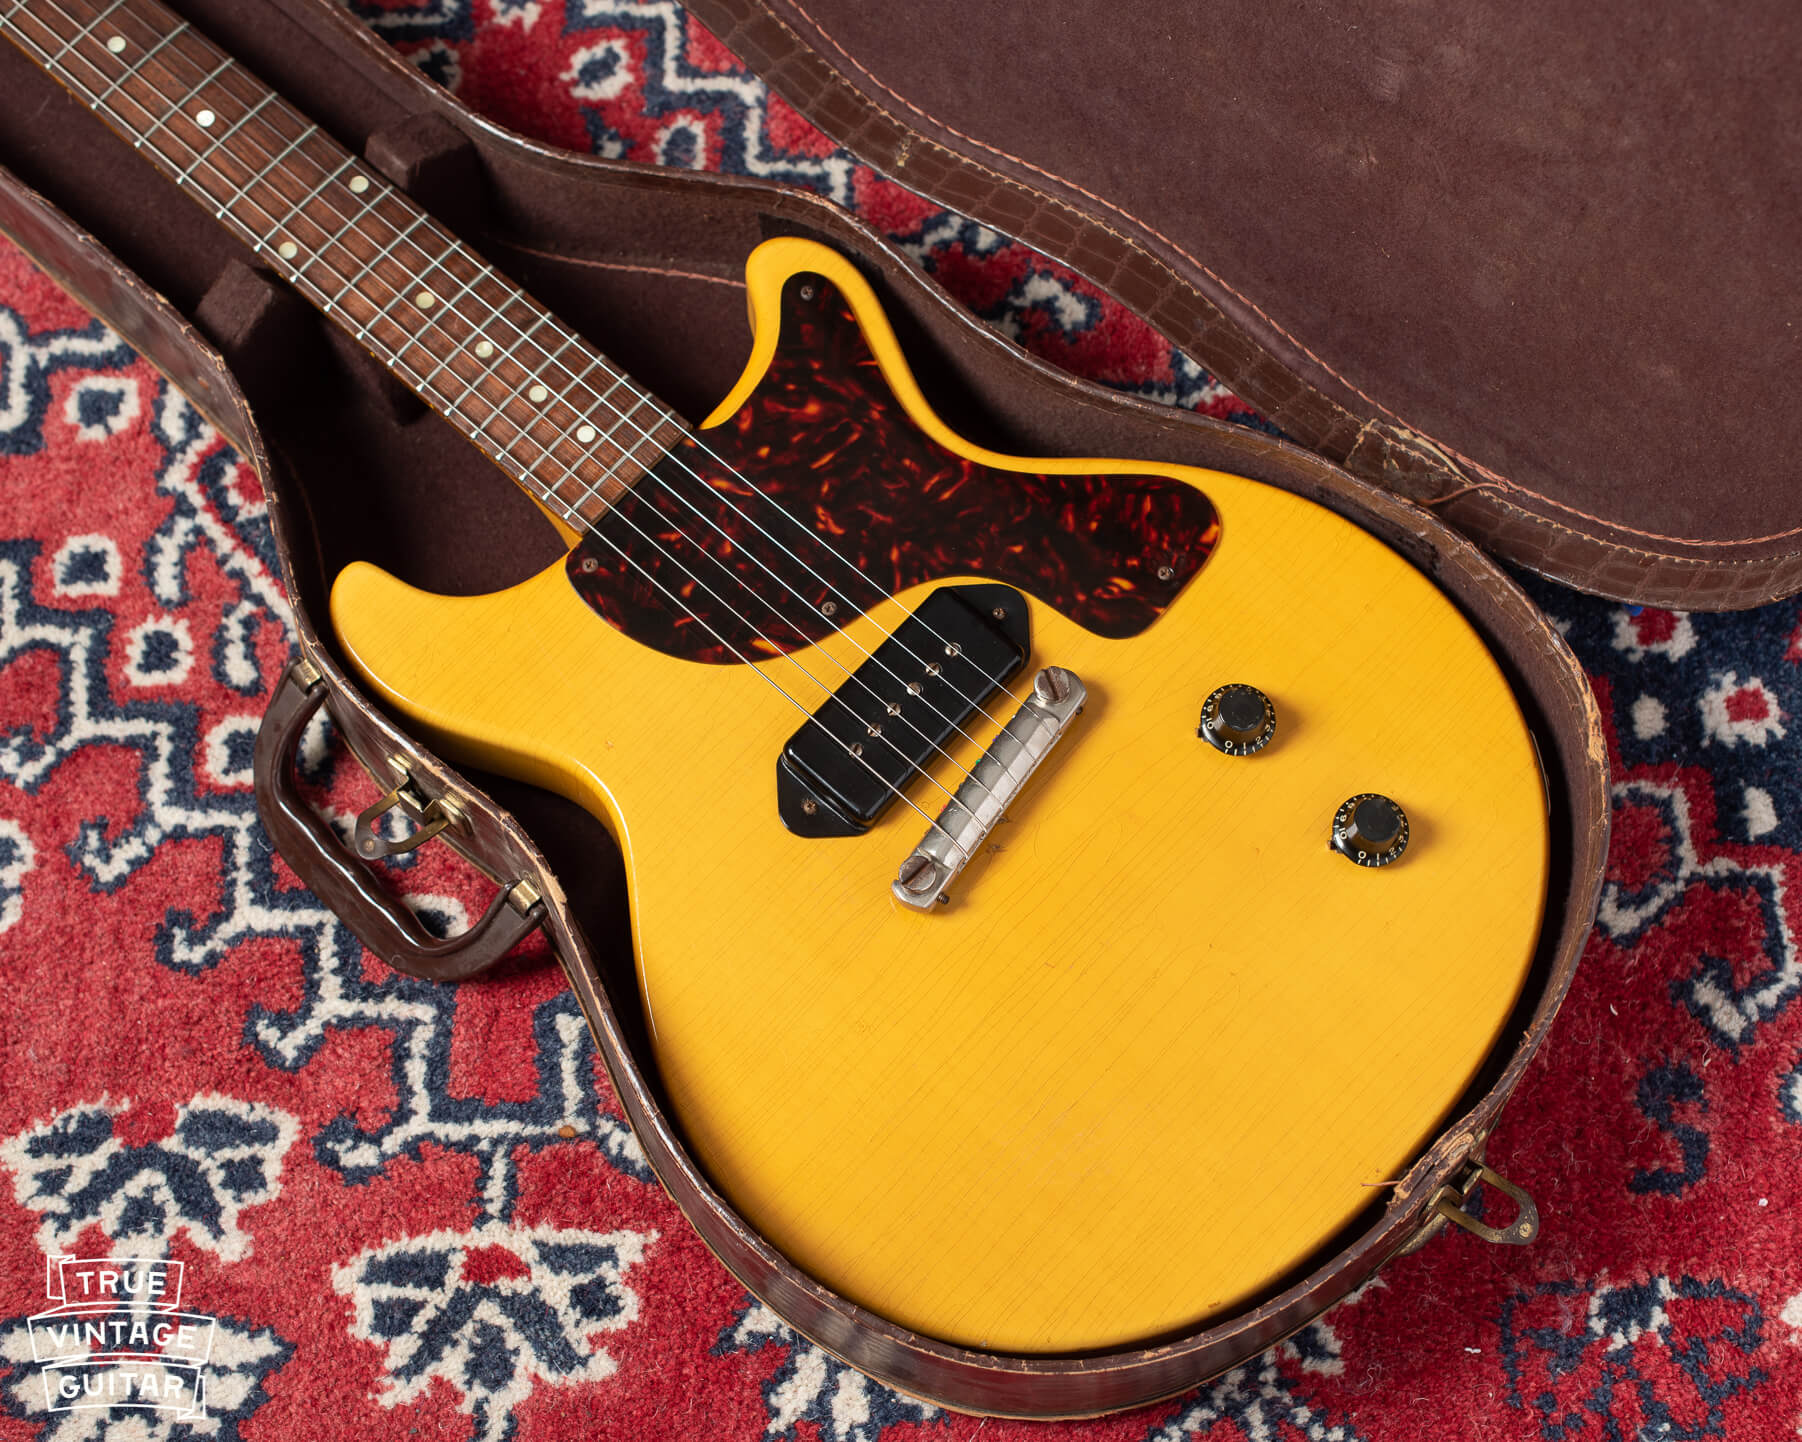 Gibson Les Paul TV 1958 guitar yellow in original case